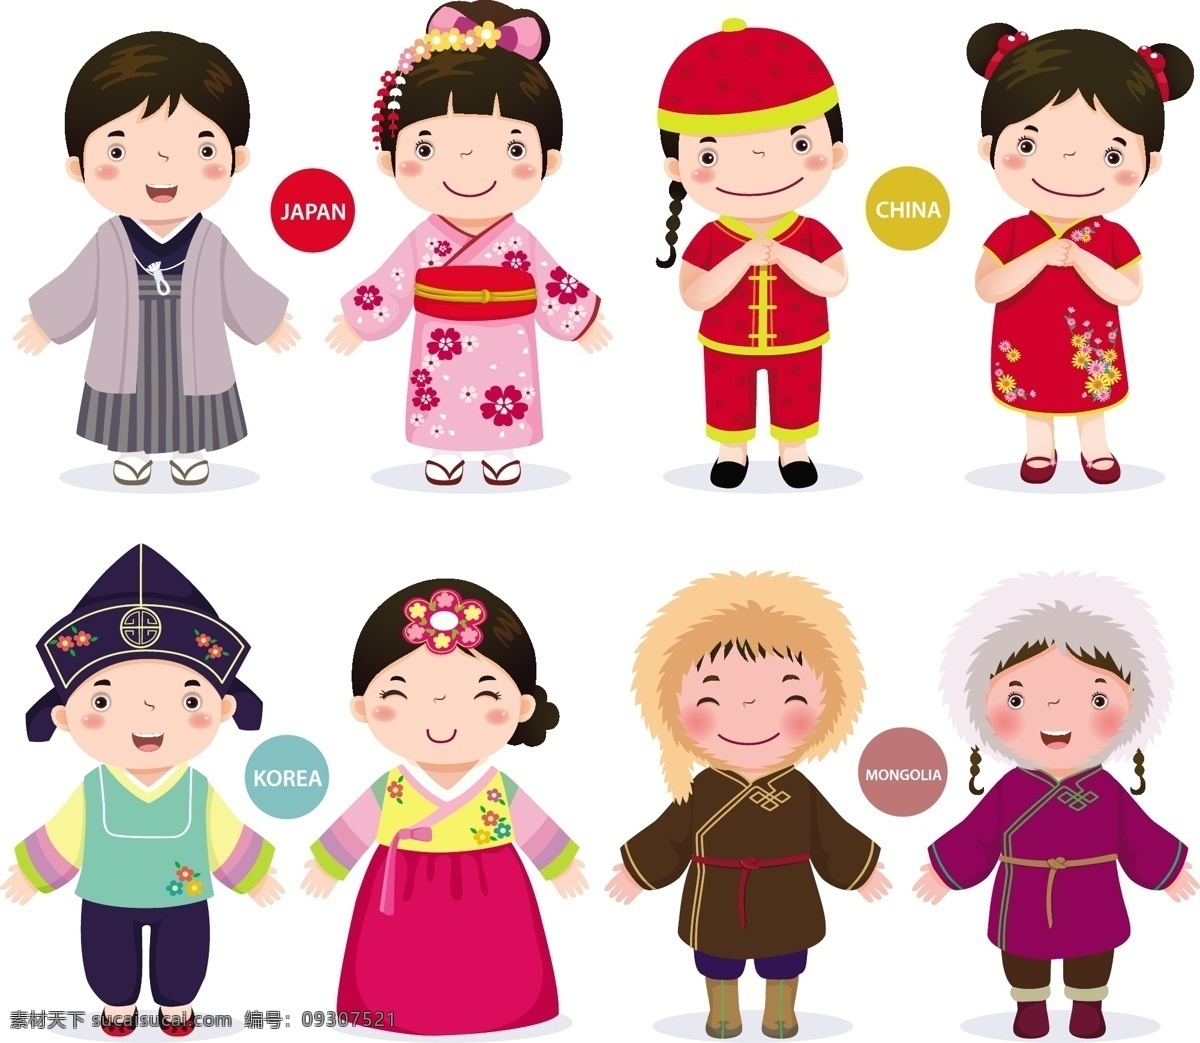 亚洲儿童 亚洲 儿童 孩子 亚洲人 日本 中国 韩国 蒙古 人物 人物图库 儿童幼儿